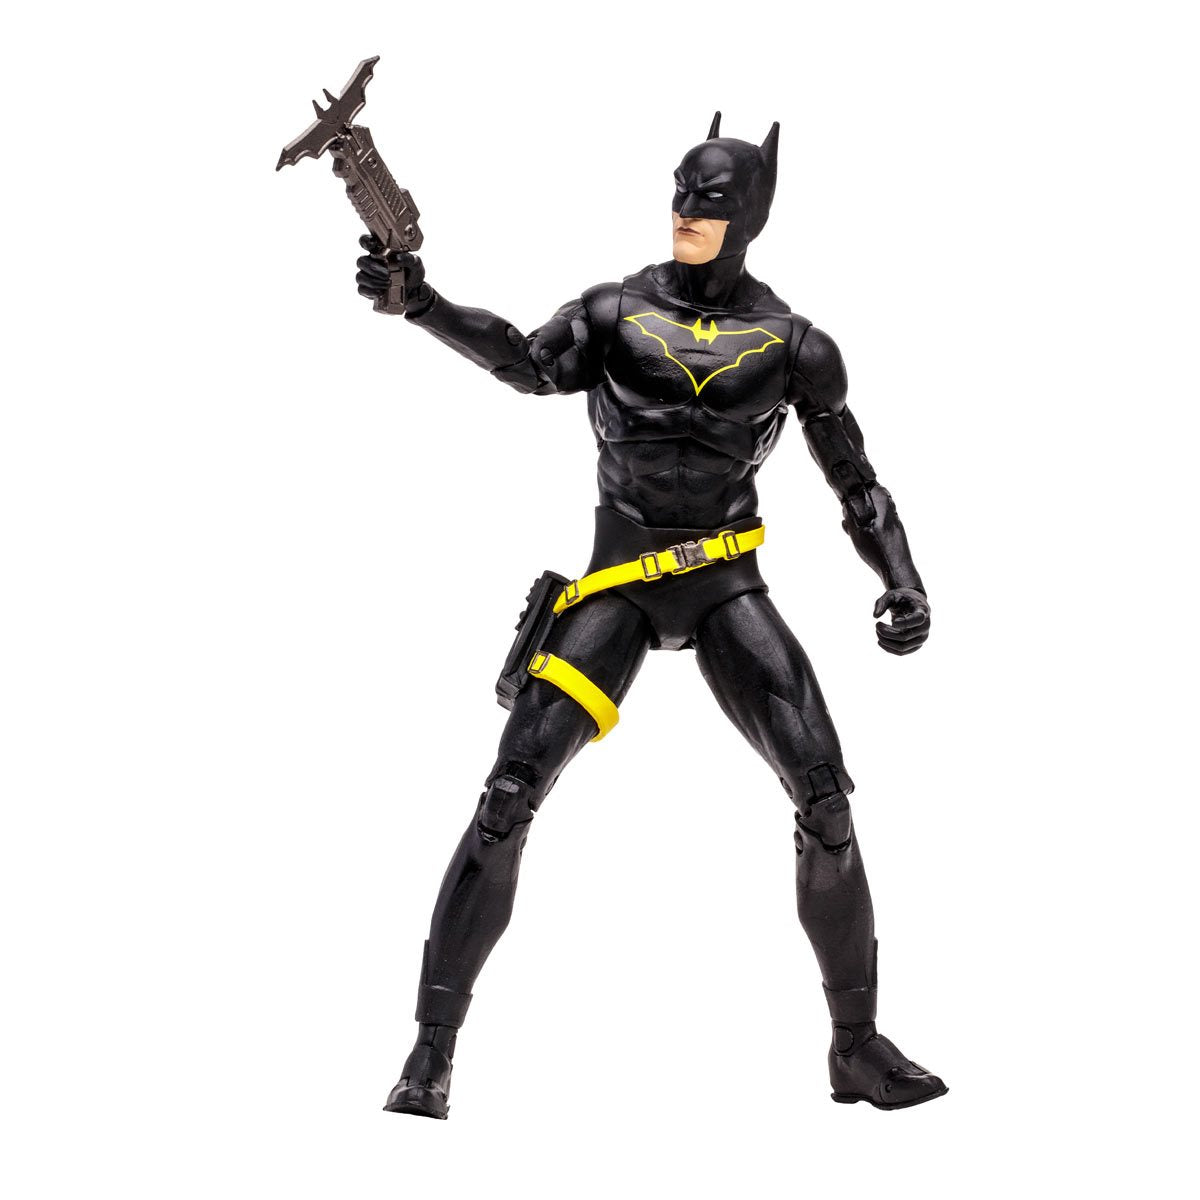 McFarlane Toys  DC Multiverse Wave 14 Jim Gordon as Batman Batman: Endgame 7-Inch Scale Action Figure